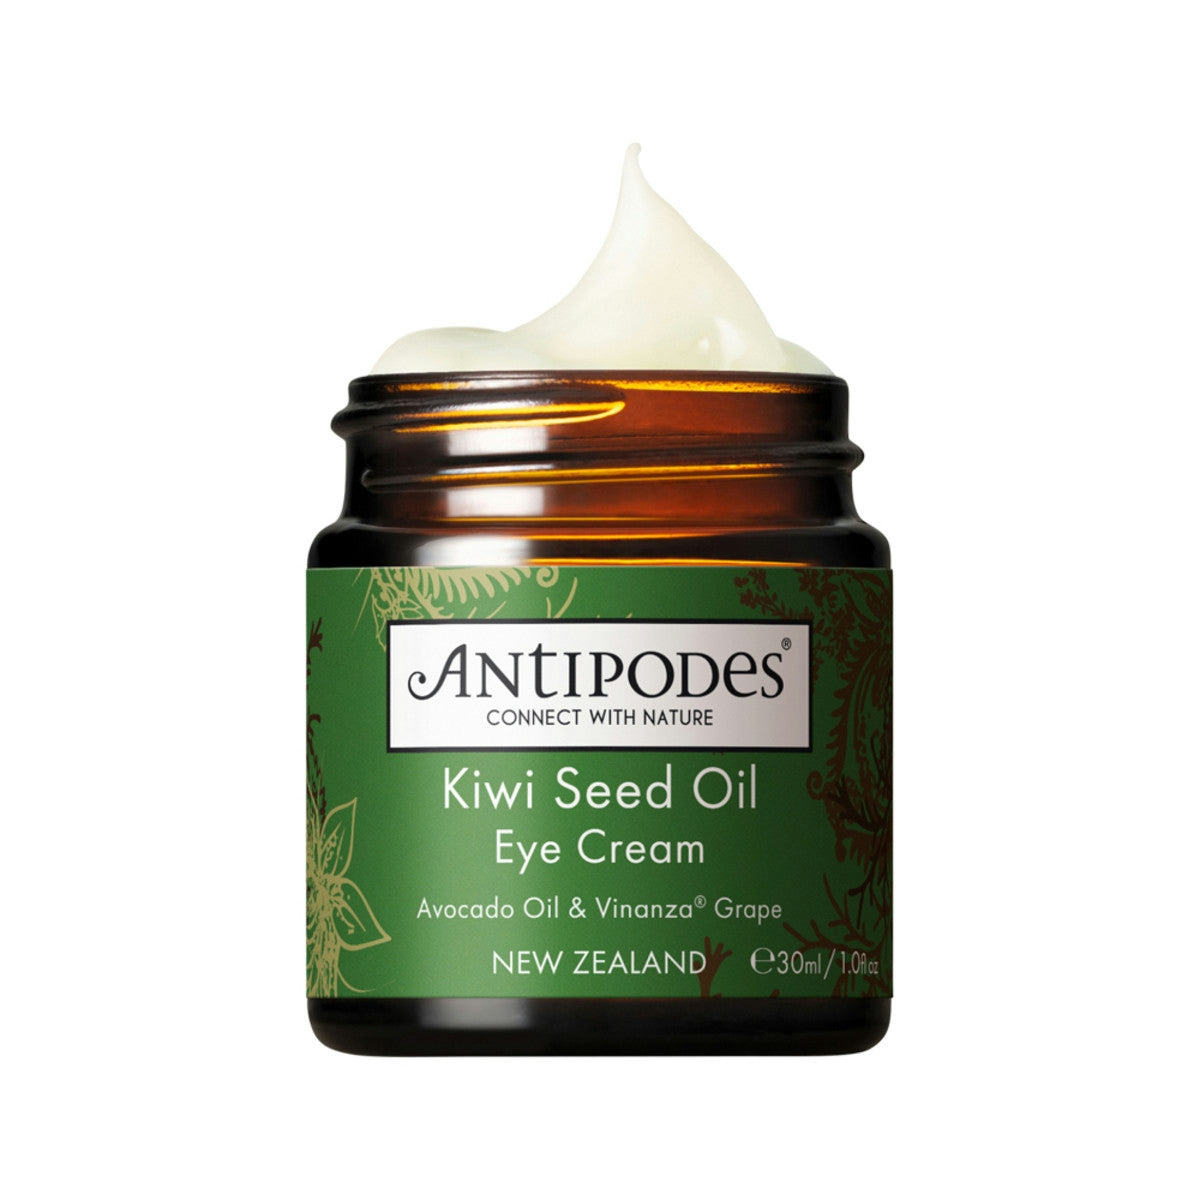 image of Antipodes Kiwi Seed Oil Eye Cream 30ml on white background 